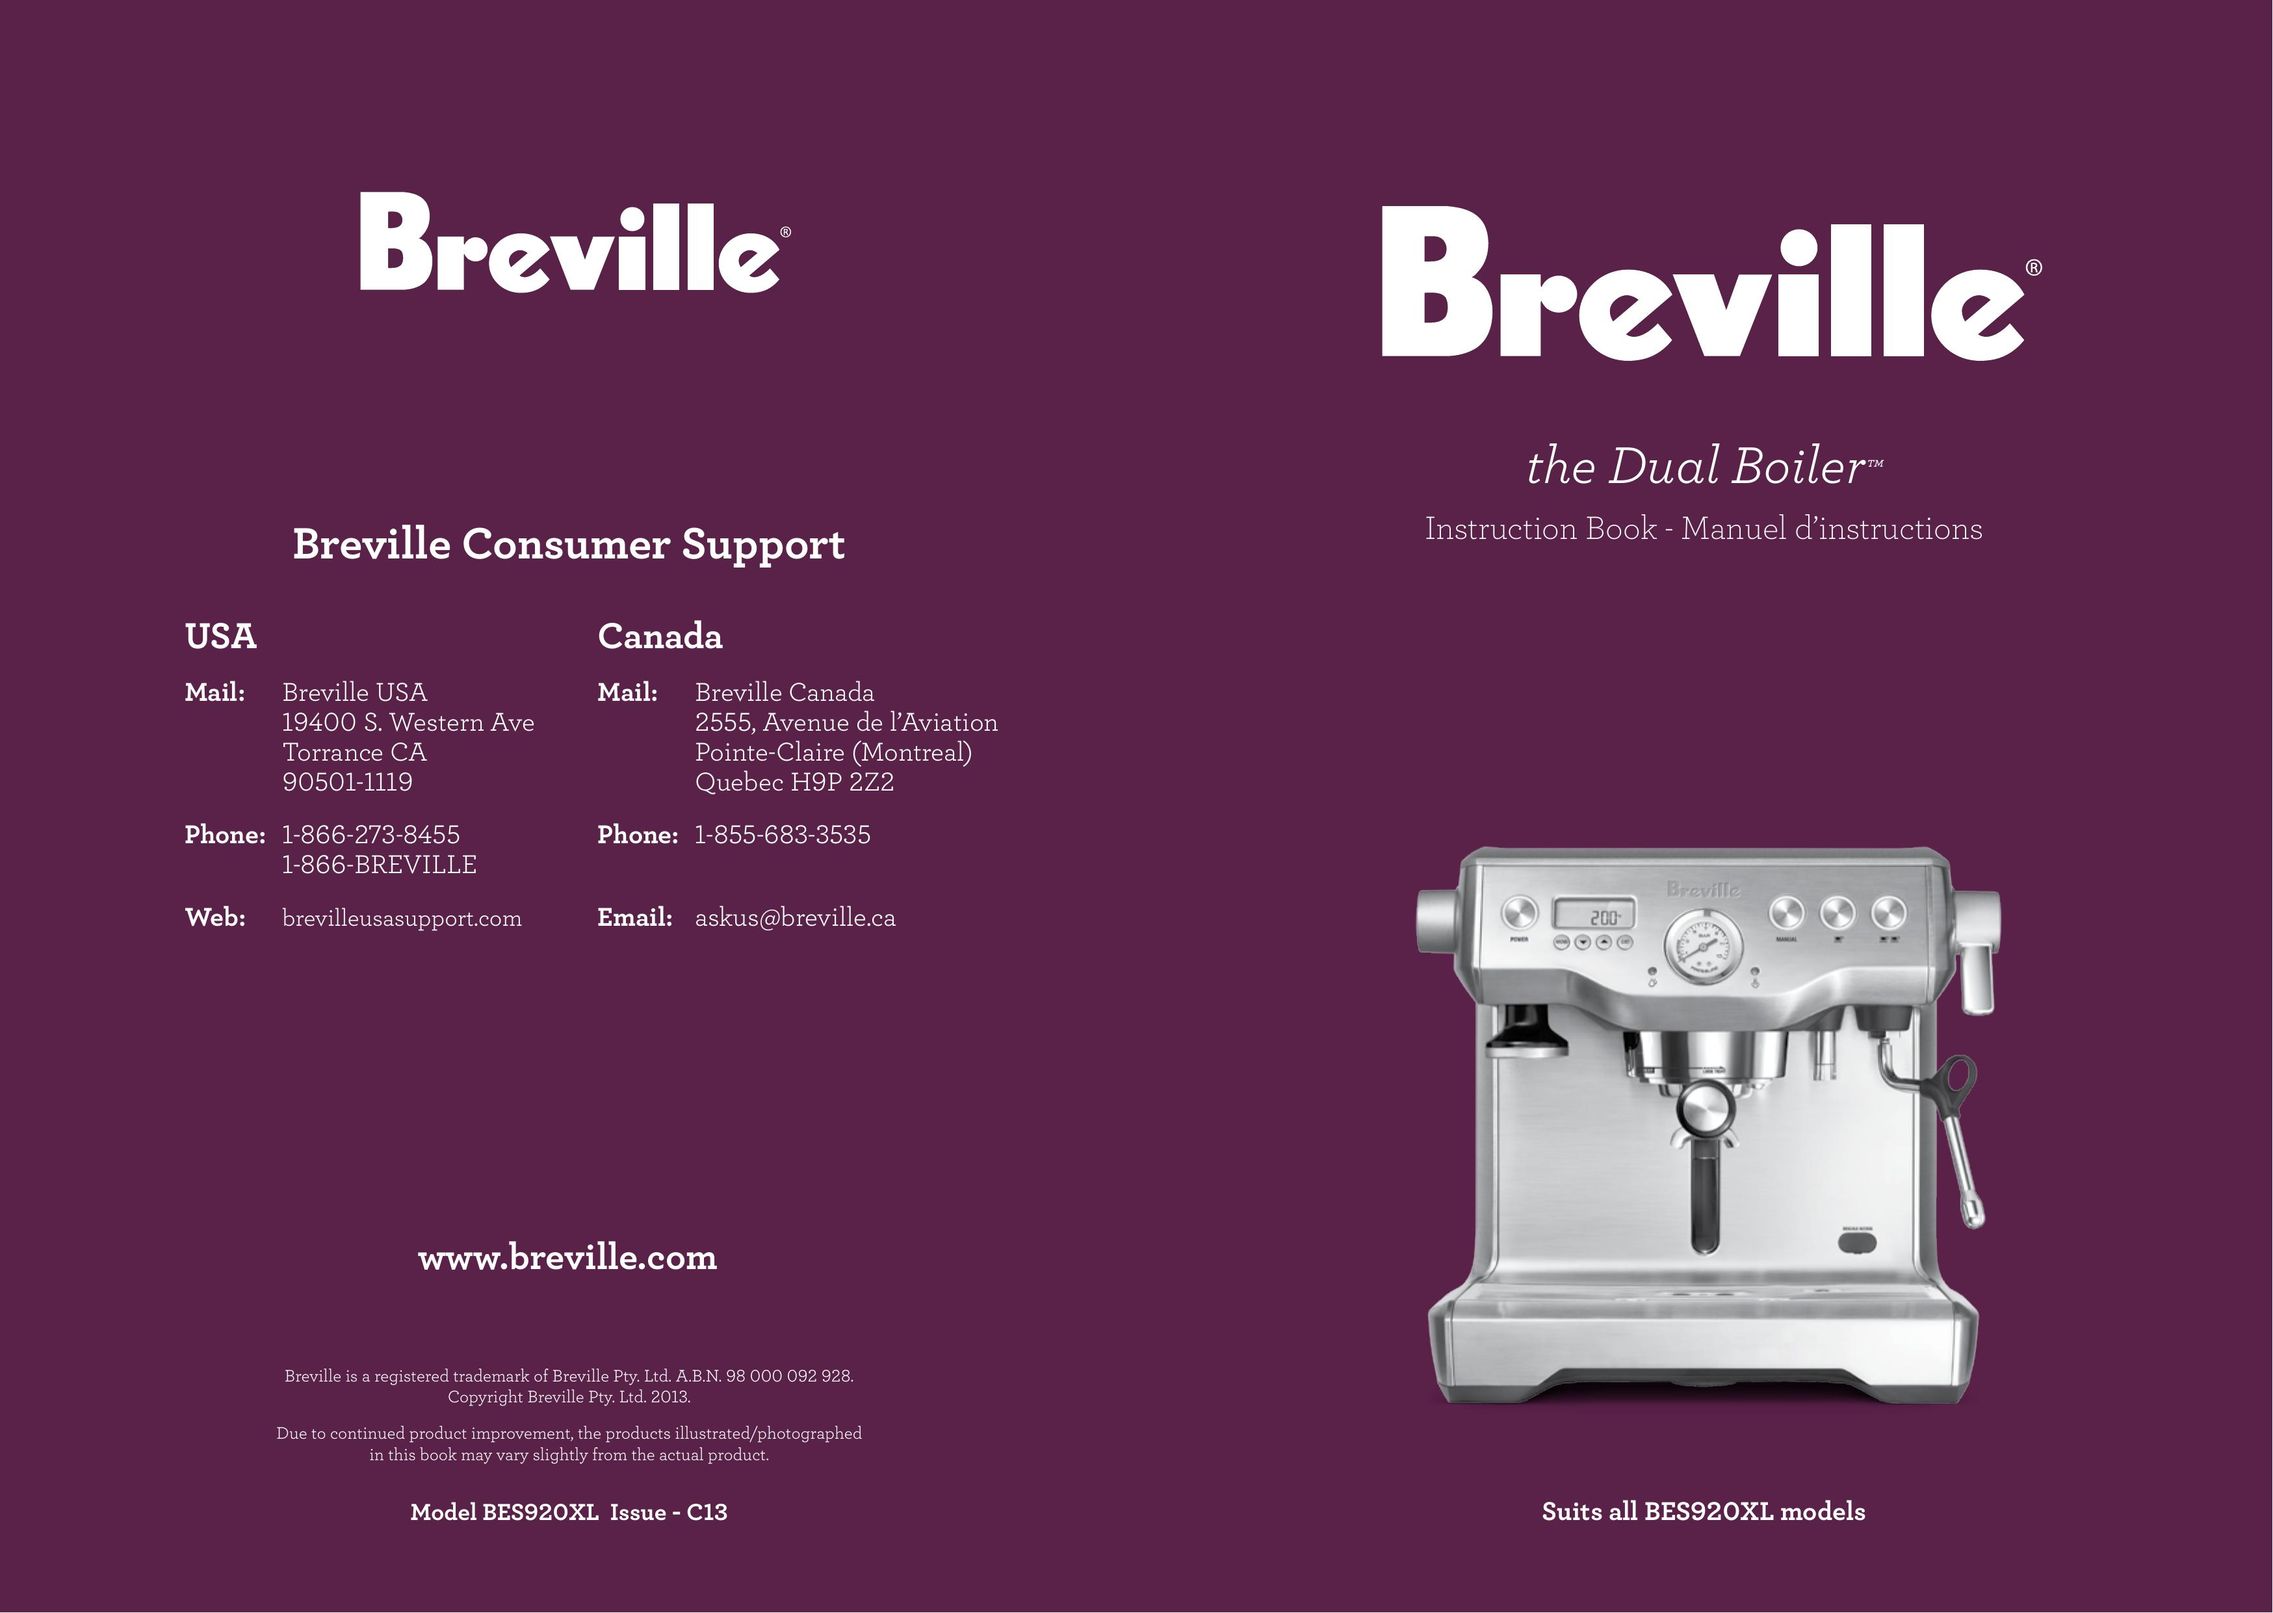 Breville the Dual Boiler Espresso Maker User Manual